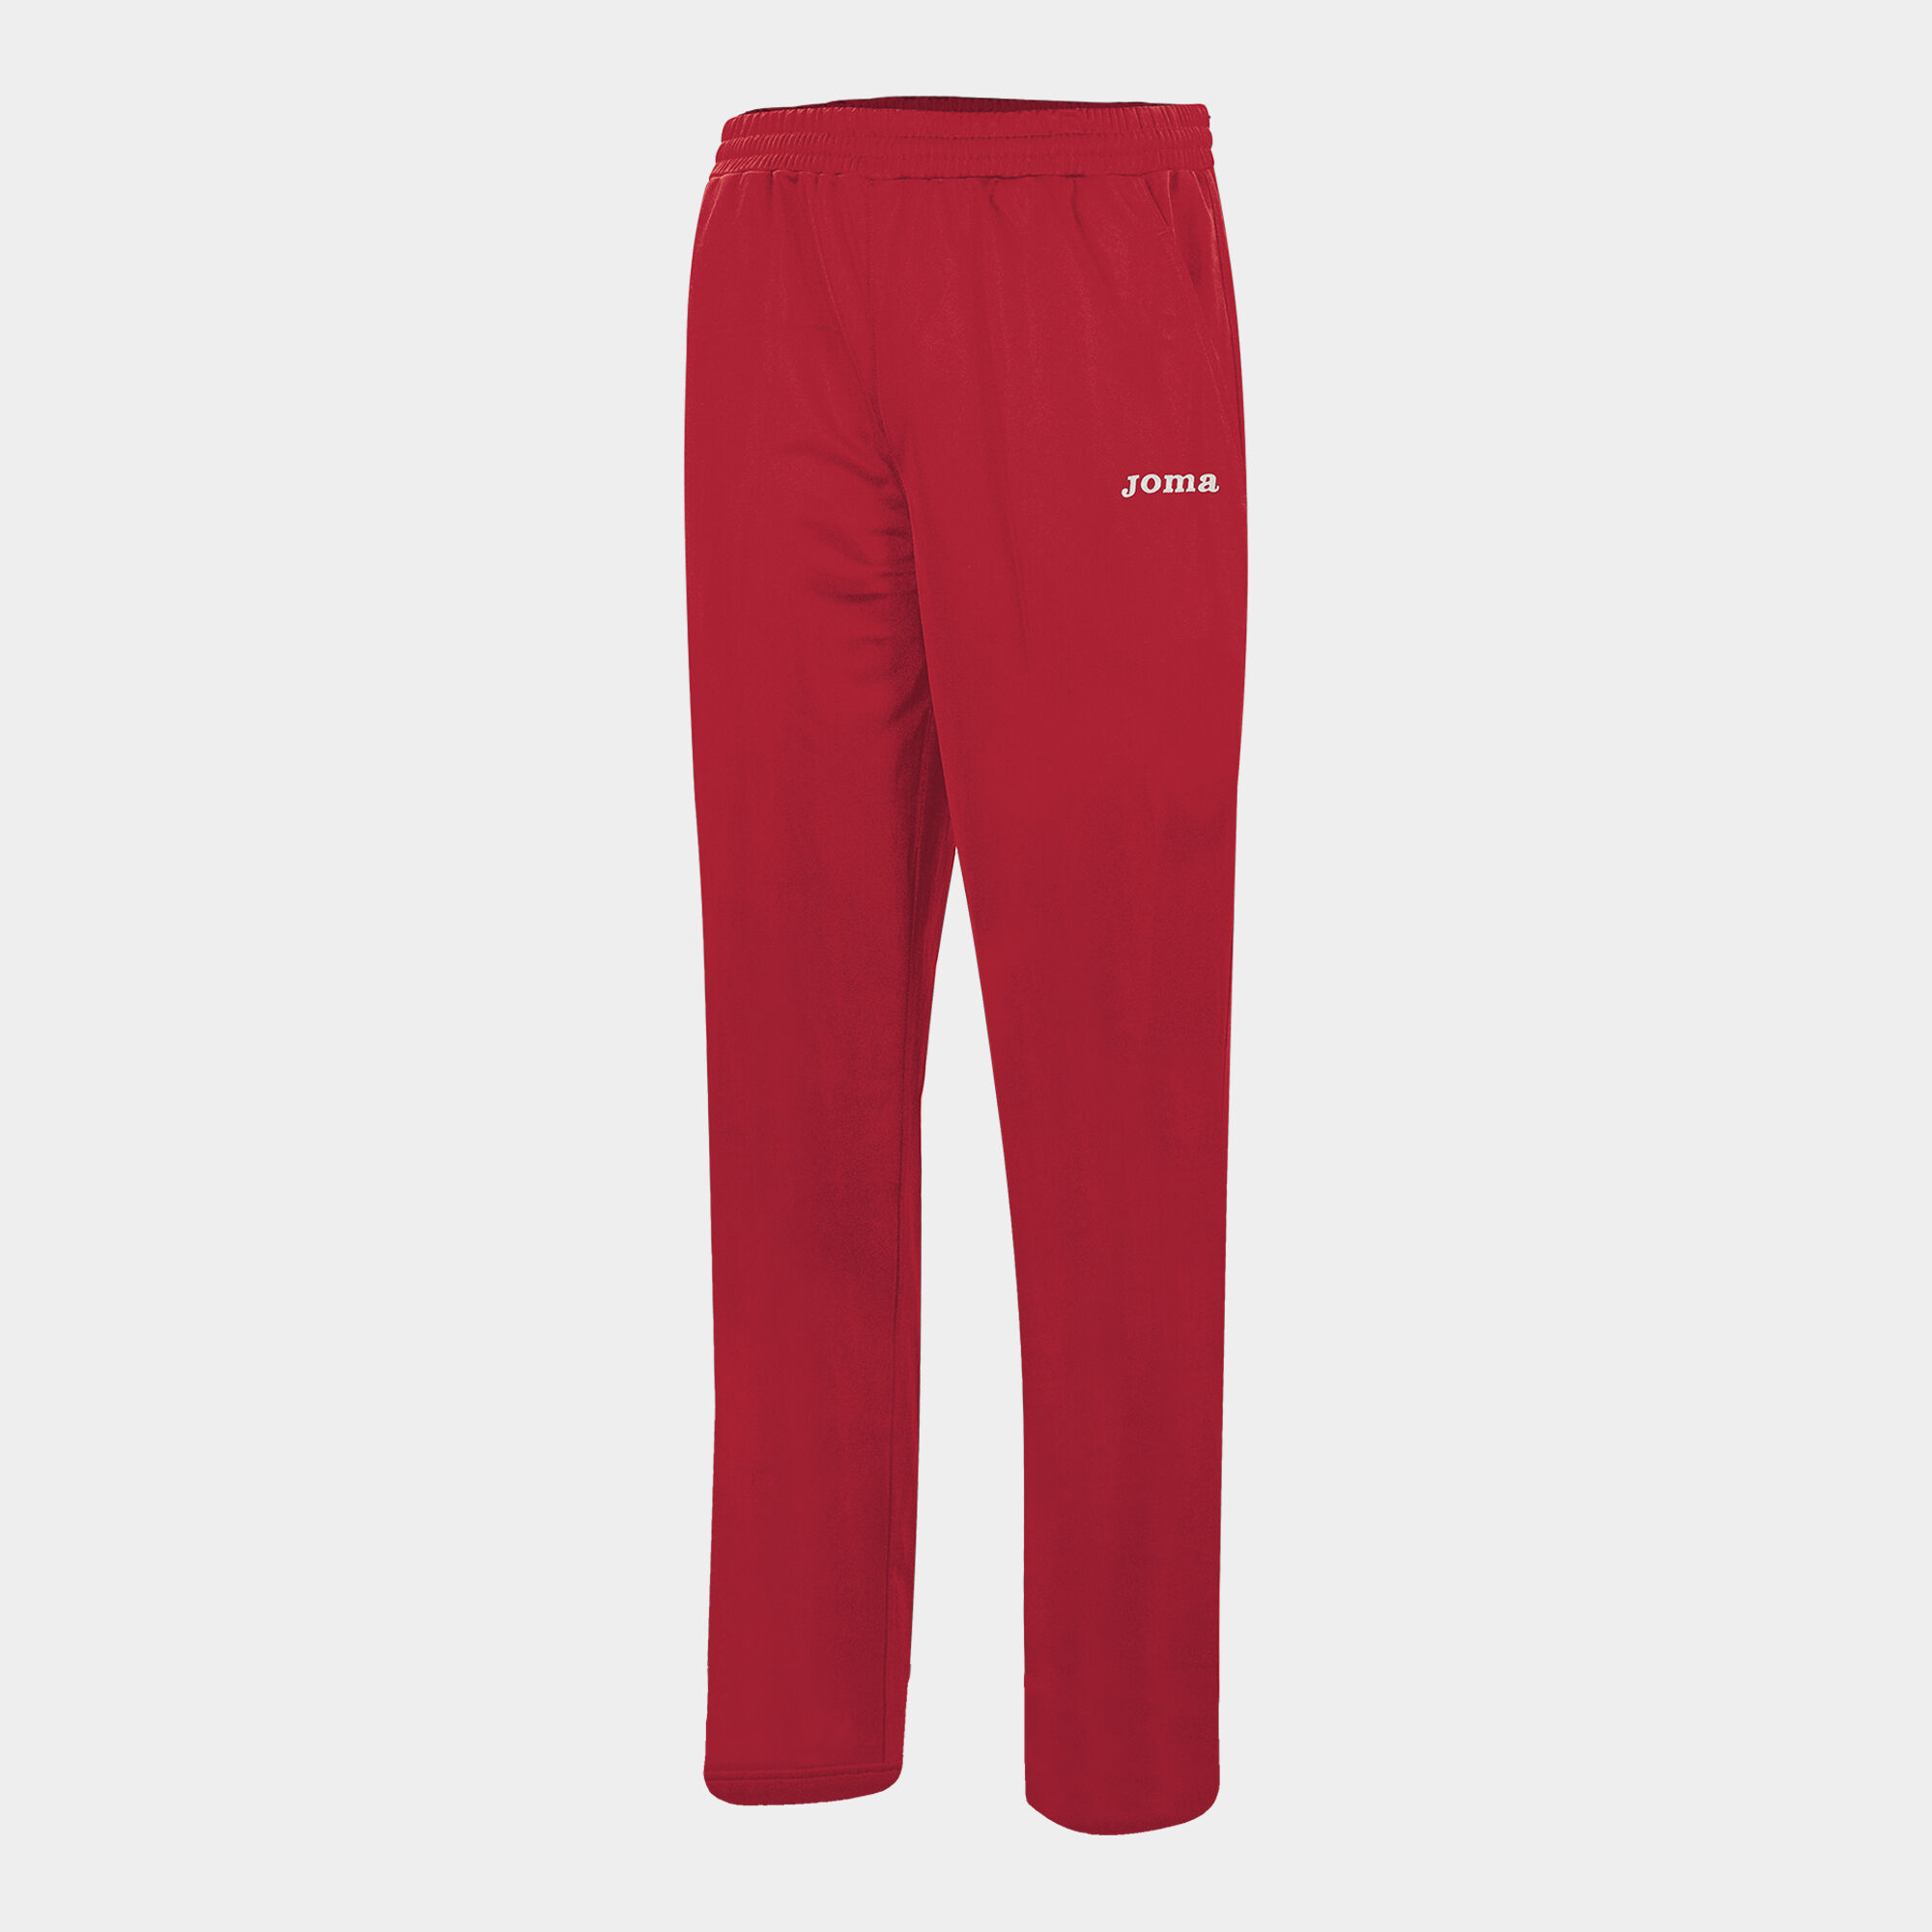 Pantaloni lungi damă Team roșu